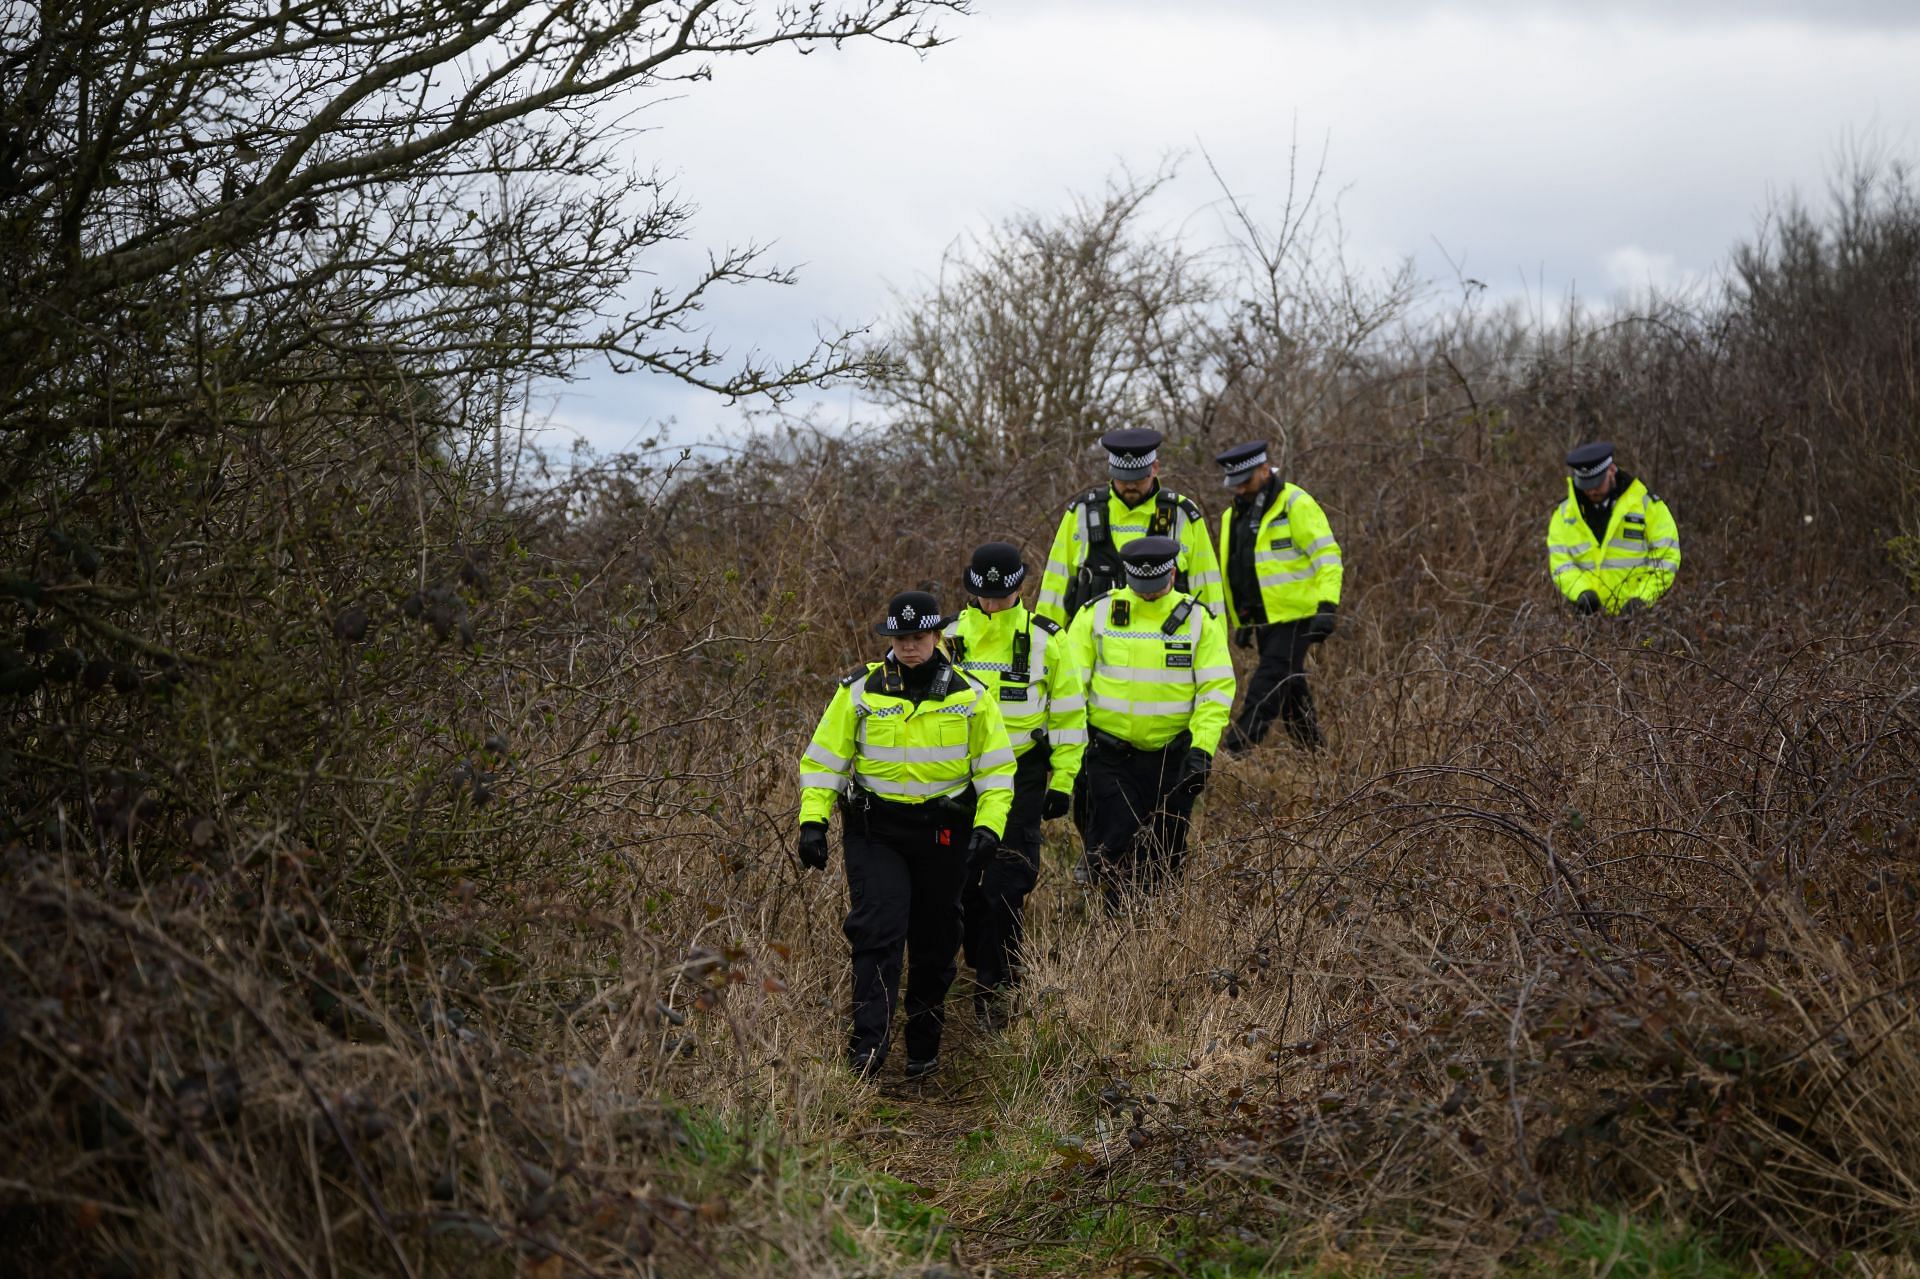 A representative image of police continuing search for Victoria (Image via Getty)